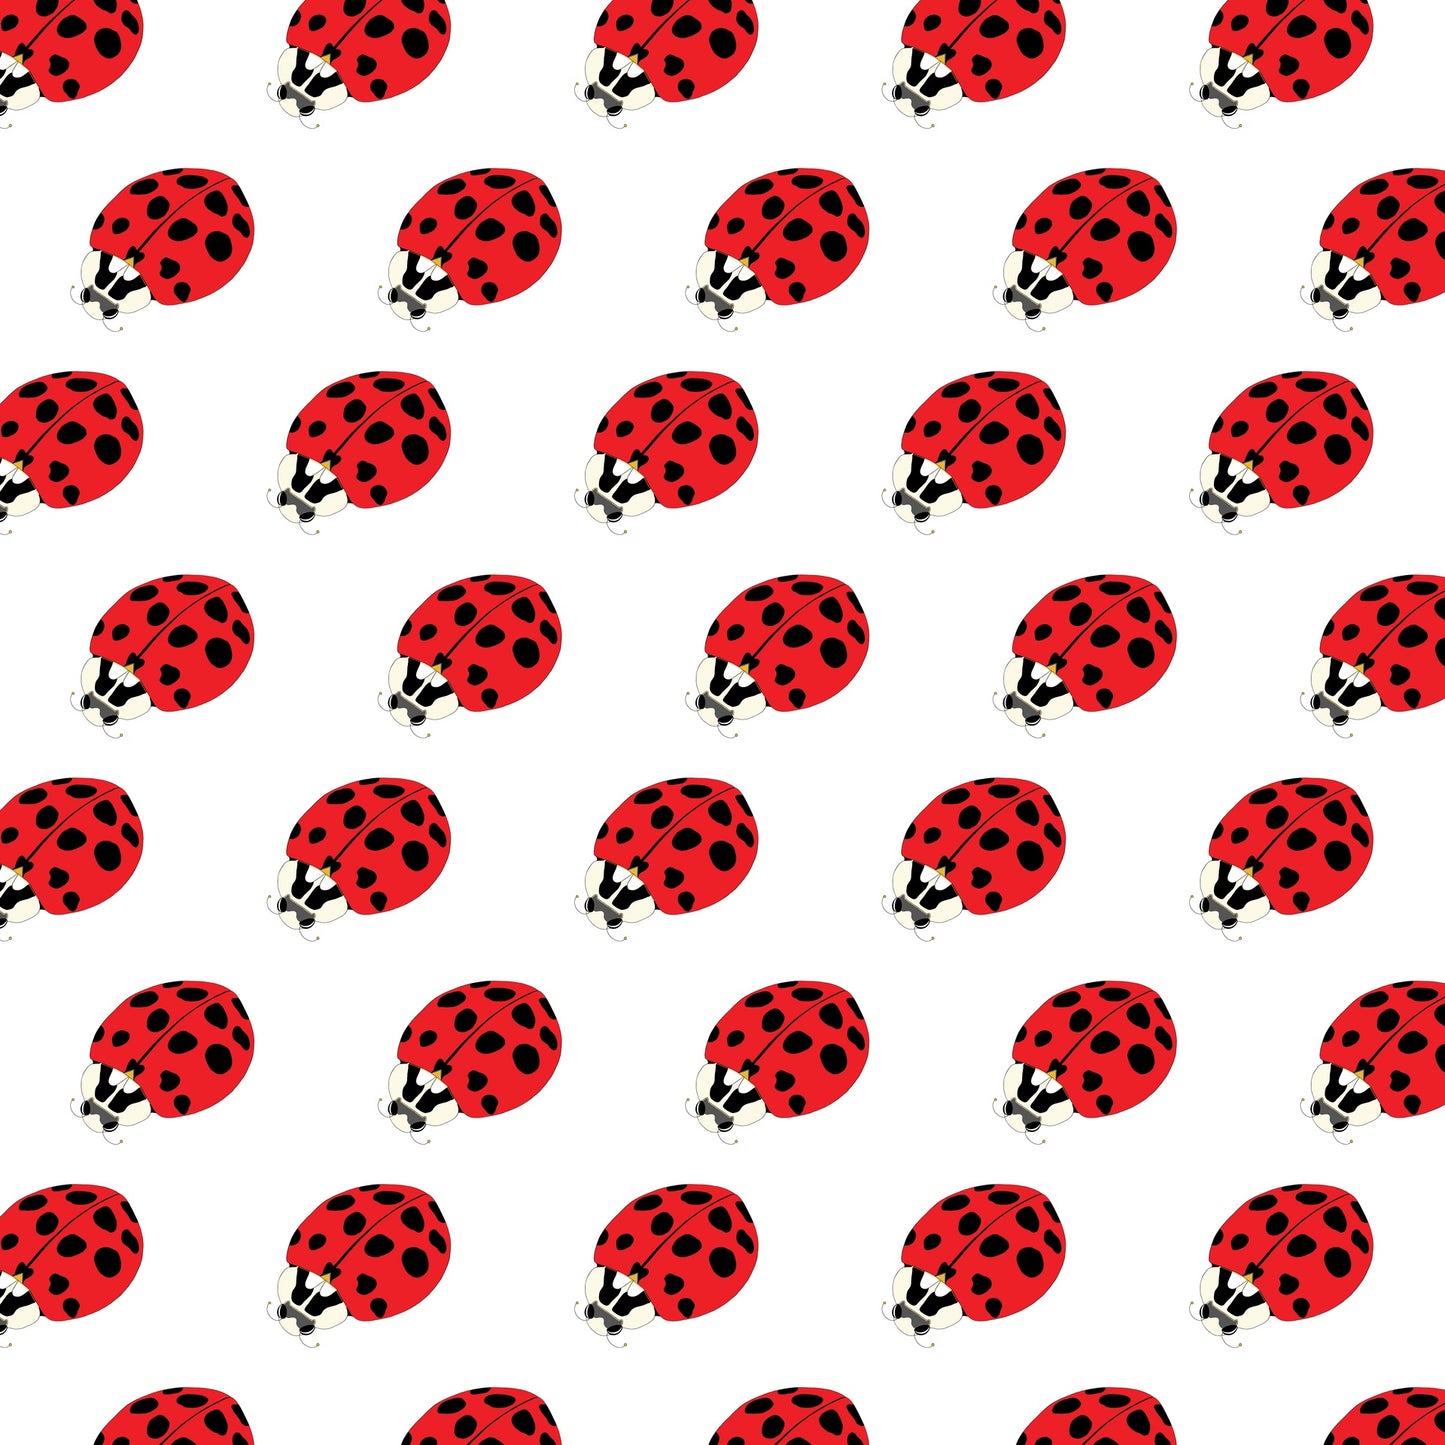 Cushion Cover - Ladybird